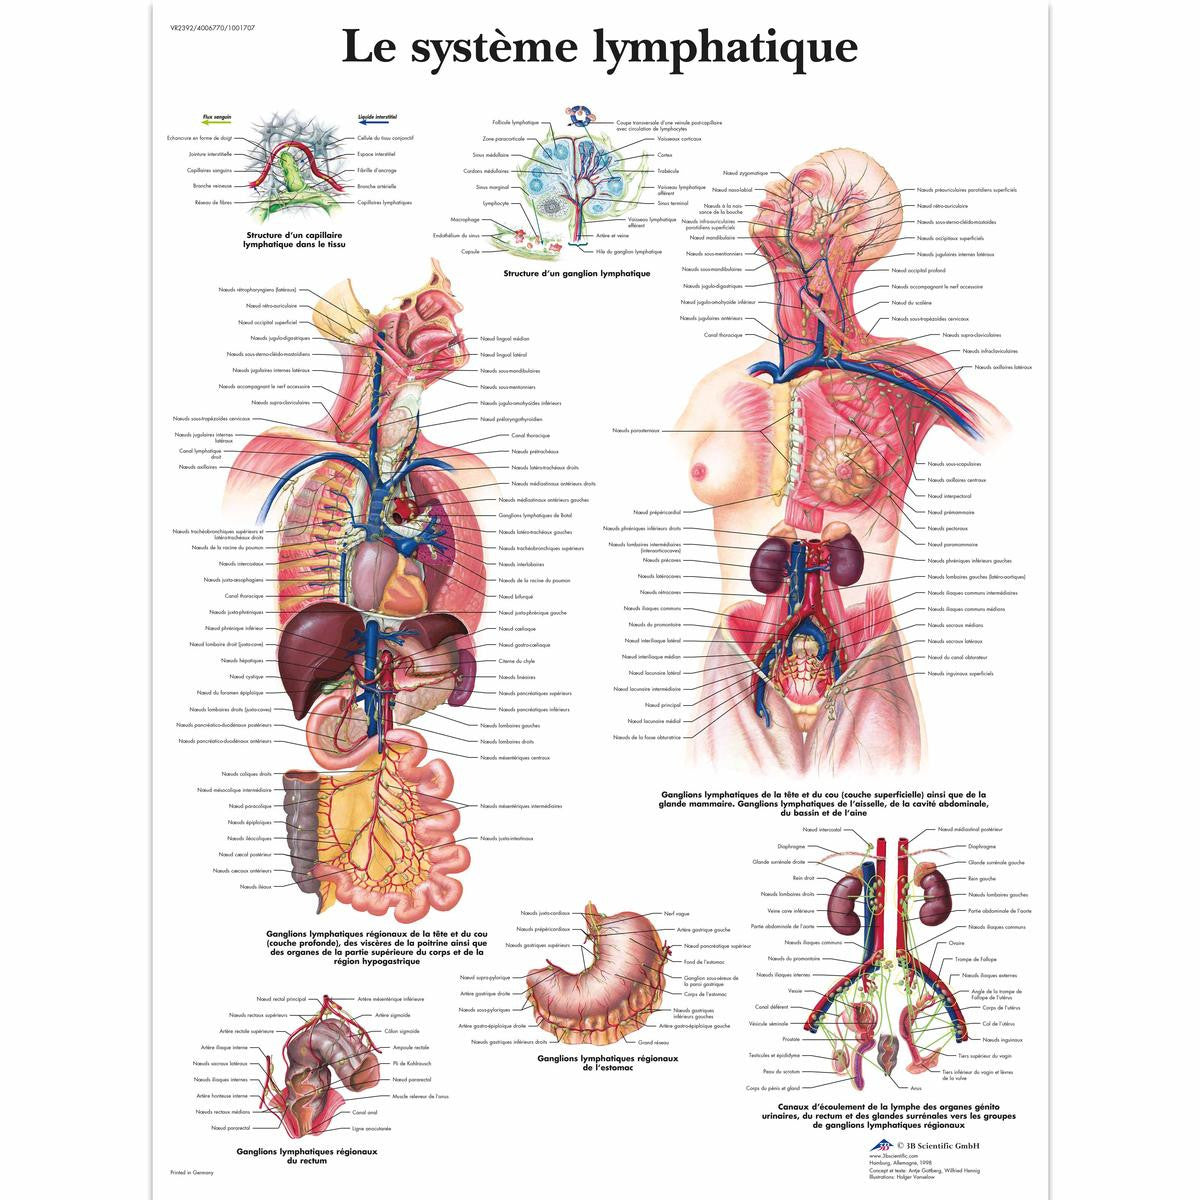 Le Systeme Lymphatique chart